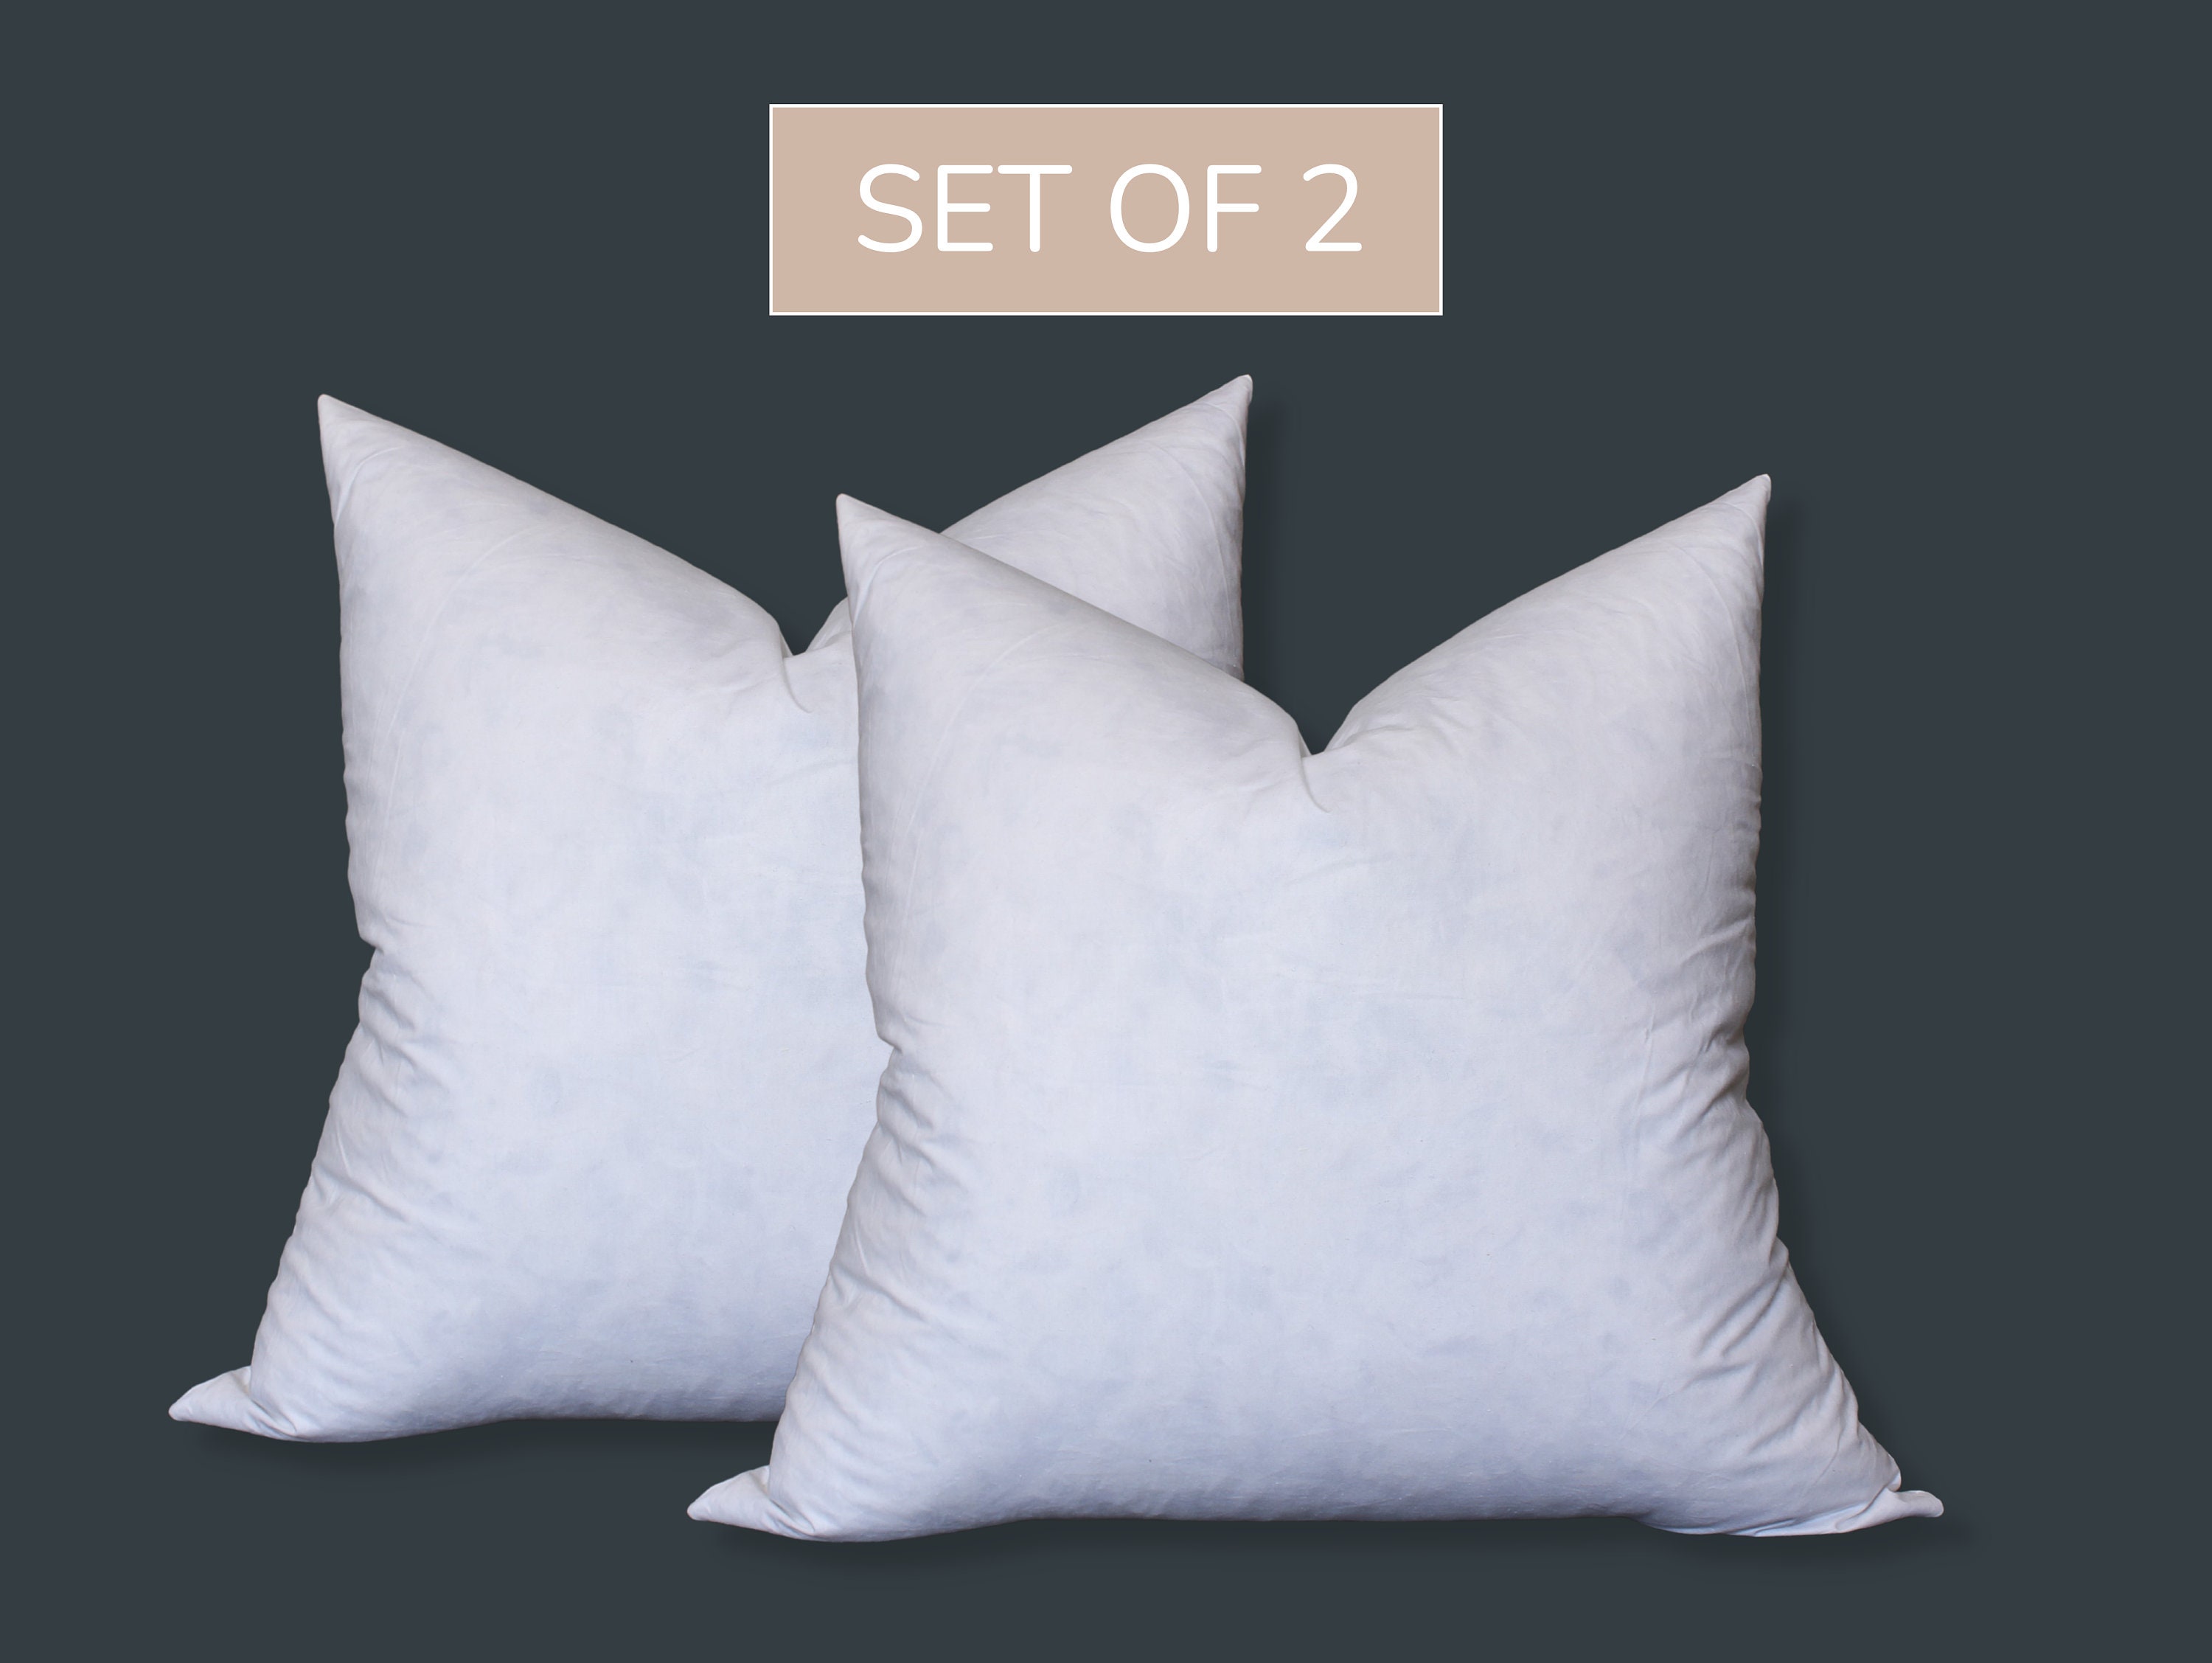  KAKABELL Throw Pillow Inserts Waterproof 16X26 Set of